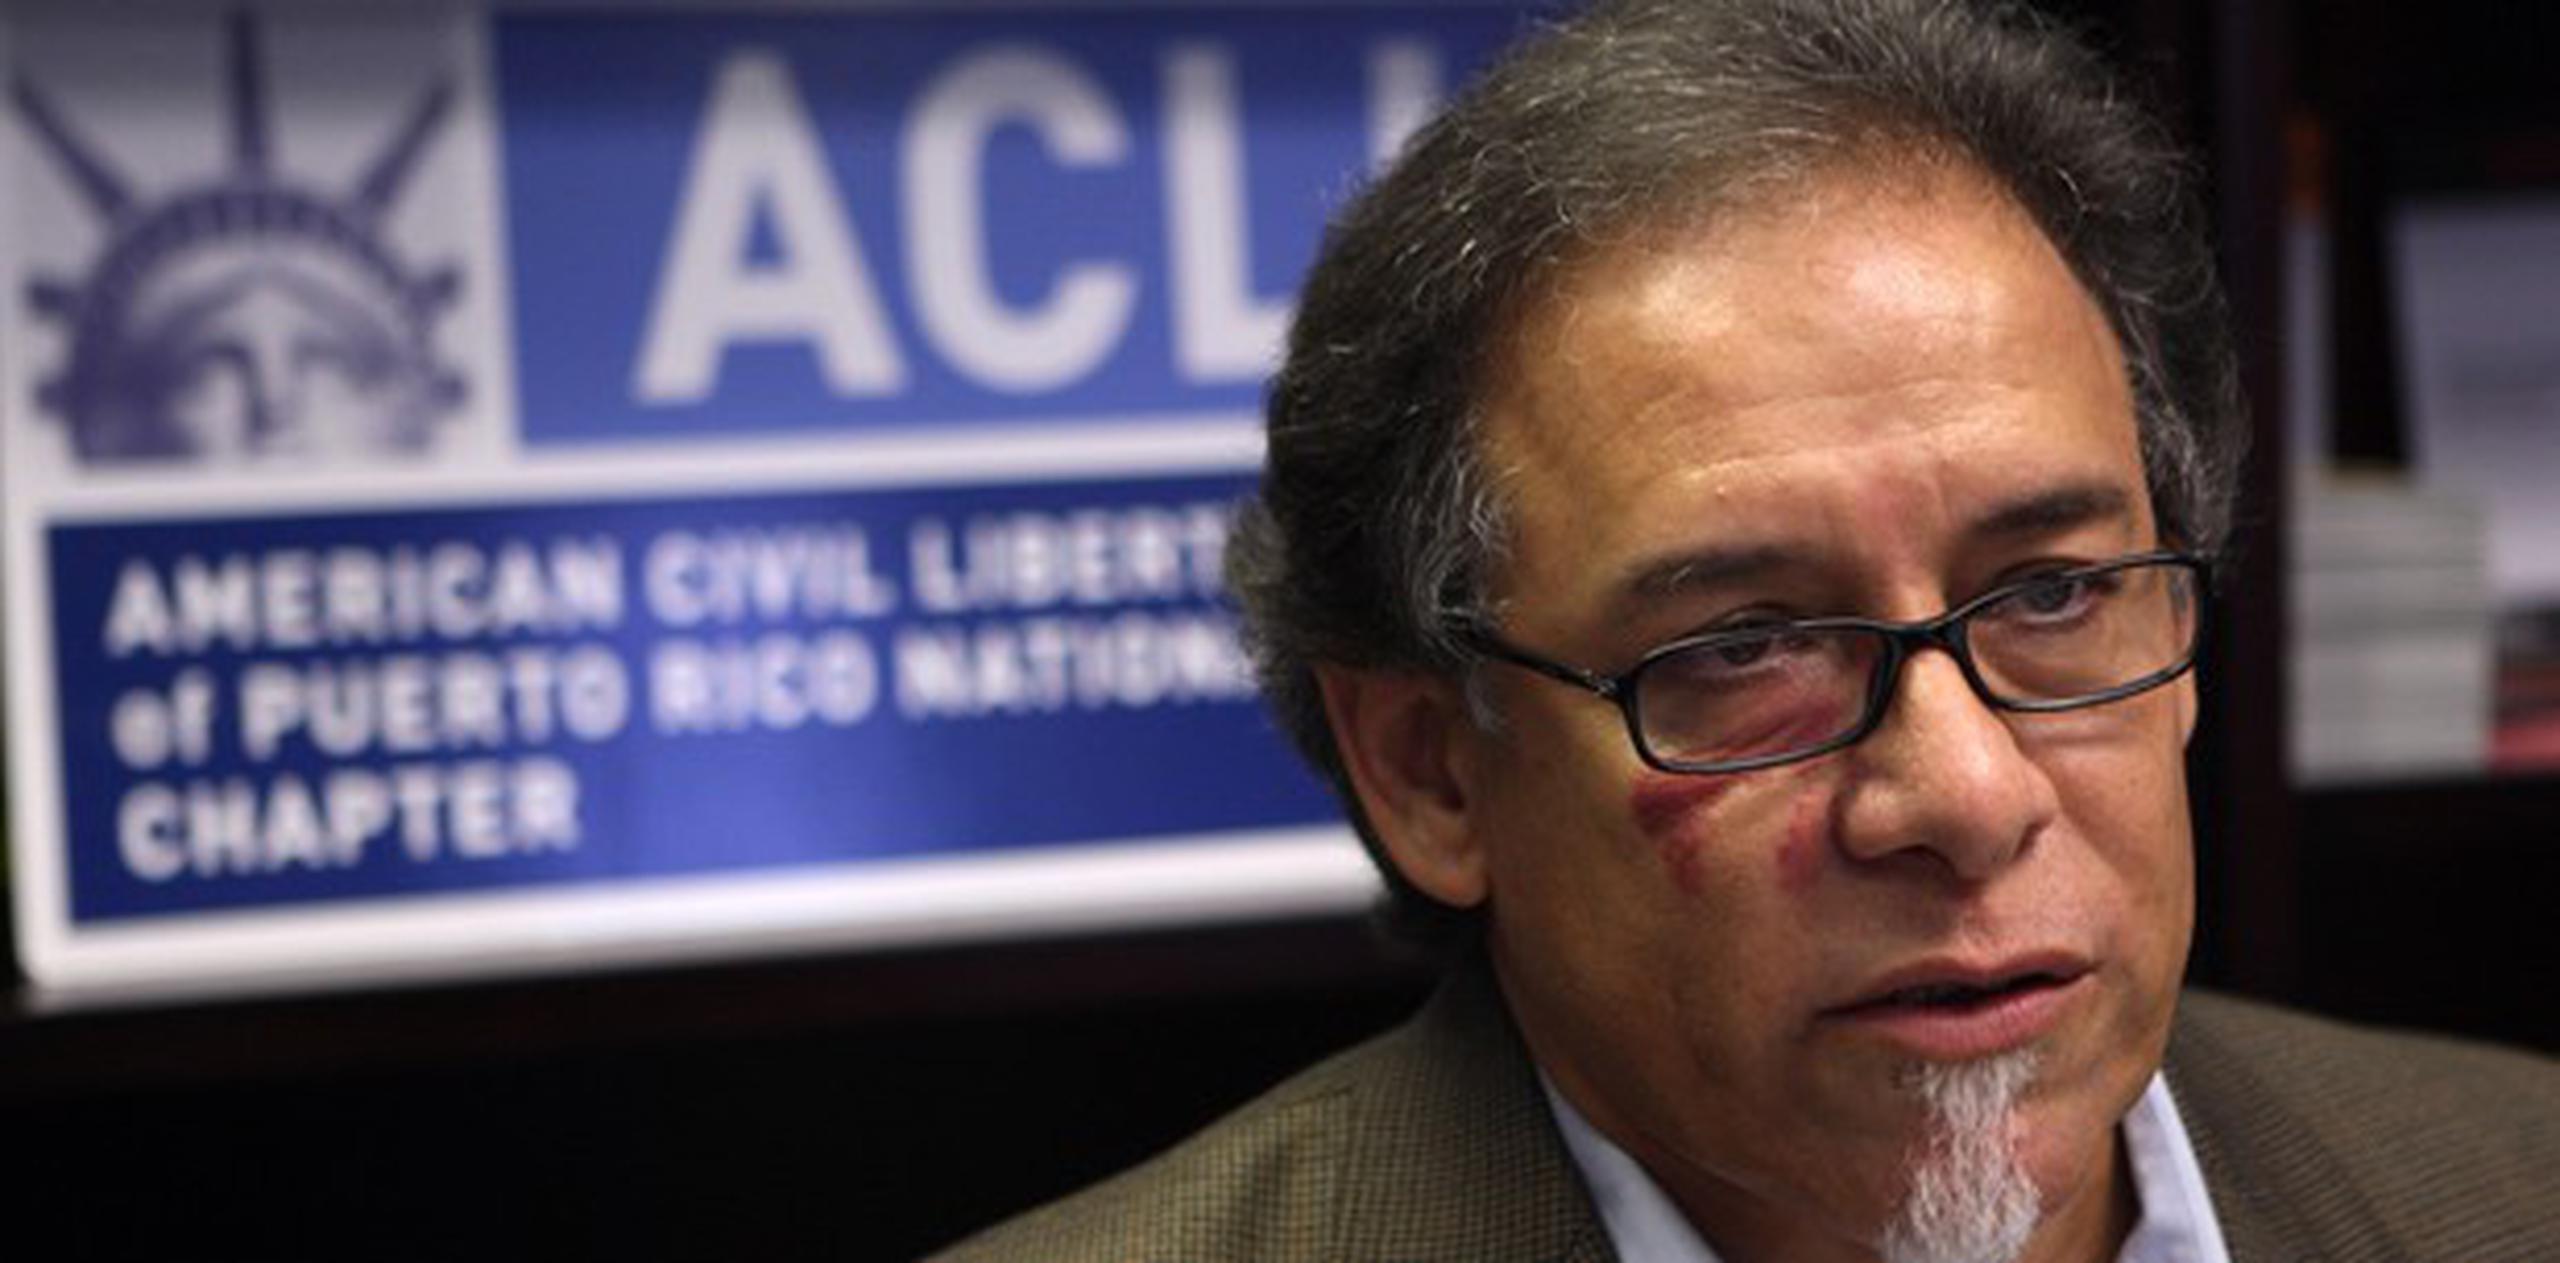 El director de ACLU, William Ramírez, indicó que la ACLU celebró una reunión de emergencia en la que se tomó la determinación. (Archivo)